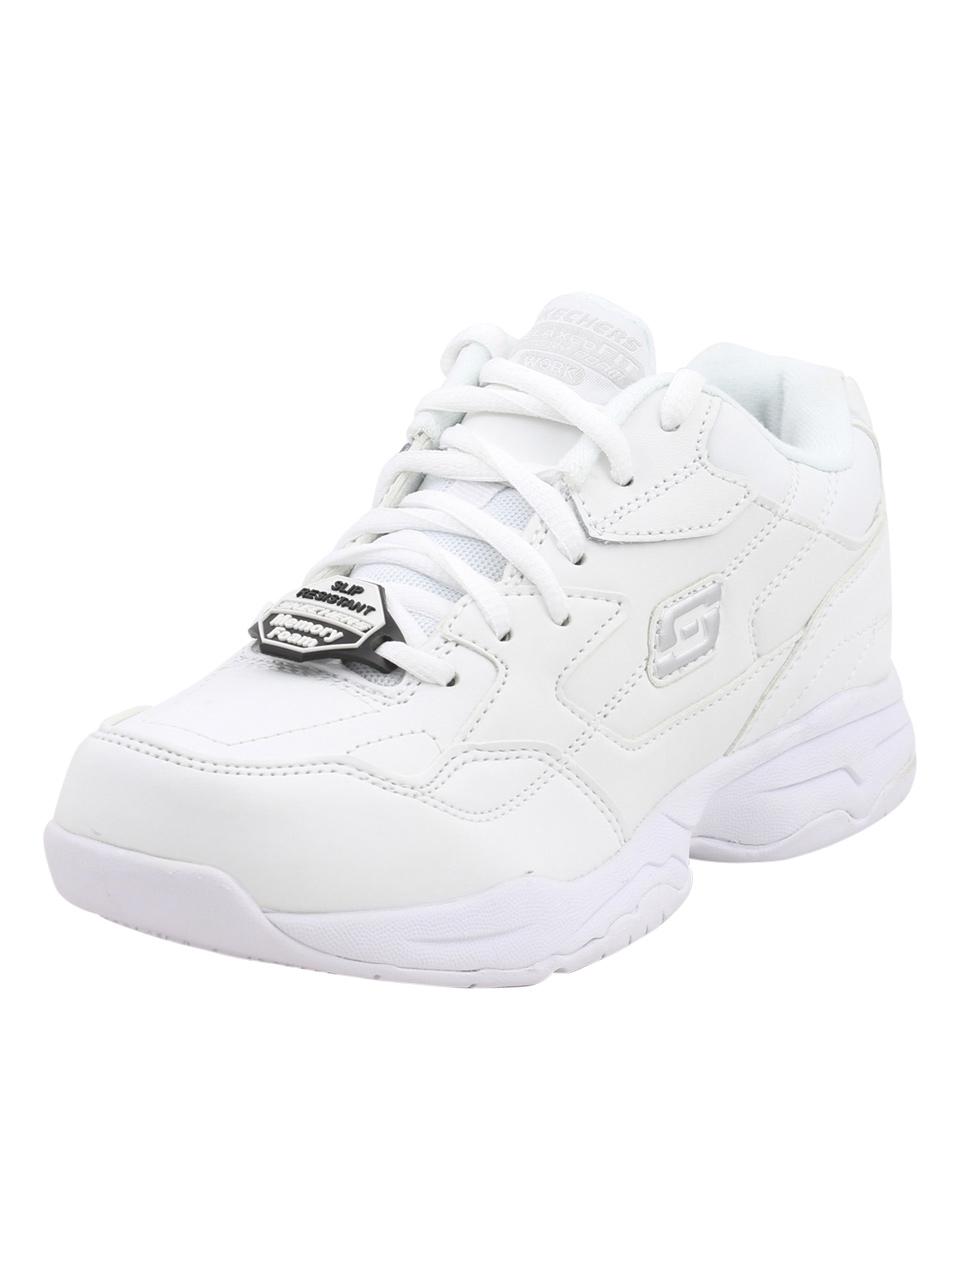 Skechers Work Women's Felton Albie Memory Foam Slip Resistant Sneakers Shoes - White - 9 B(M) US